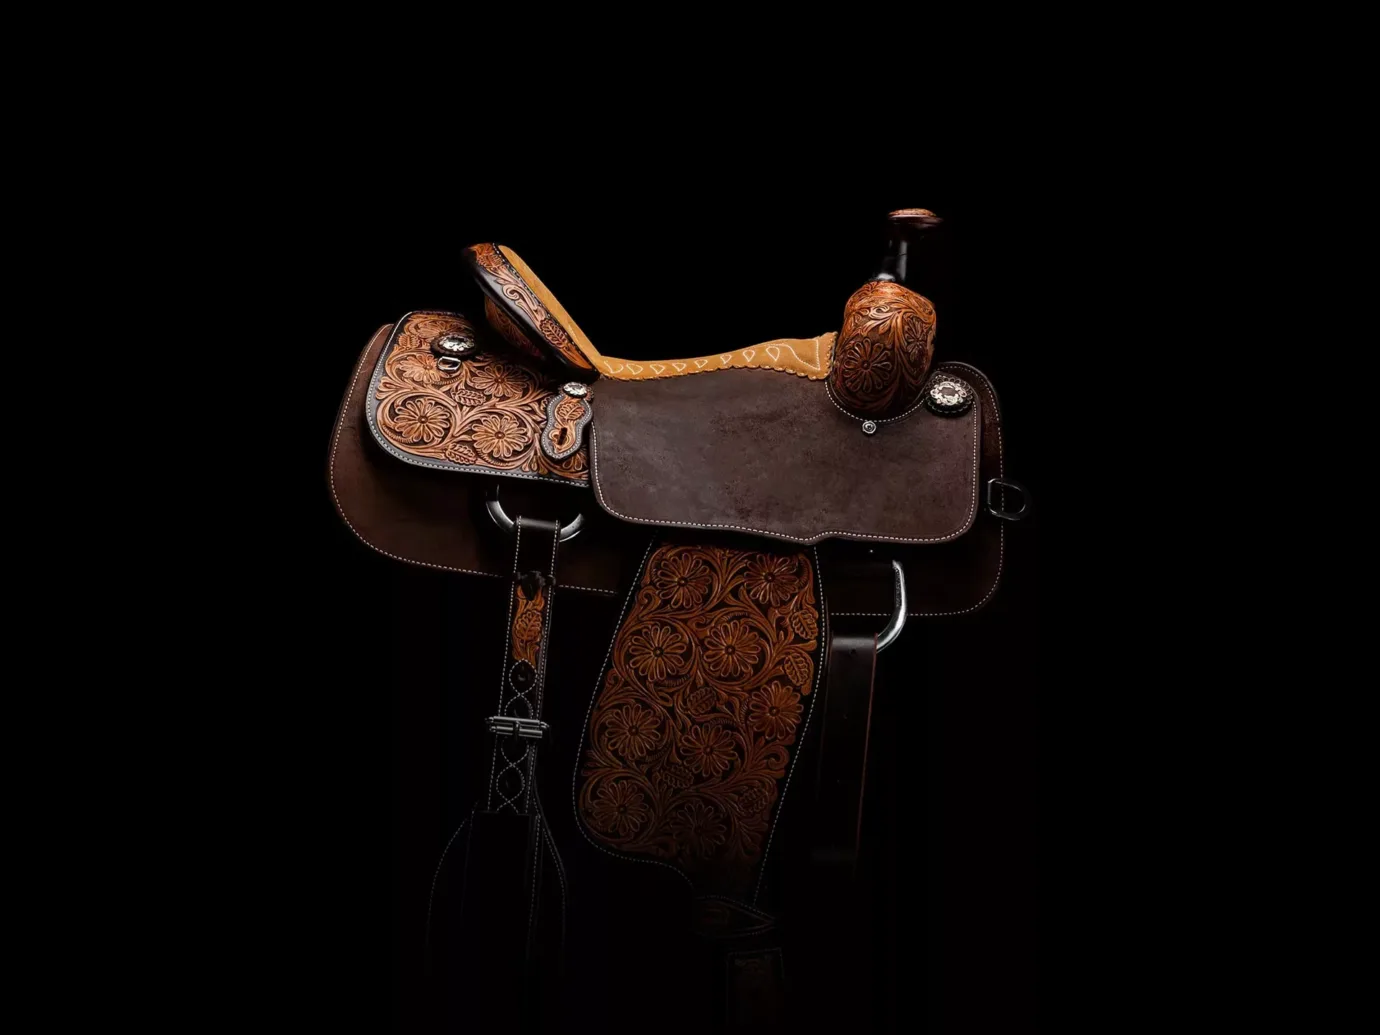 Martin Saddlery saddle on black